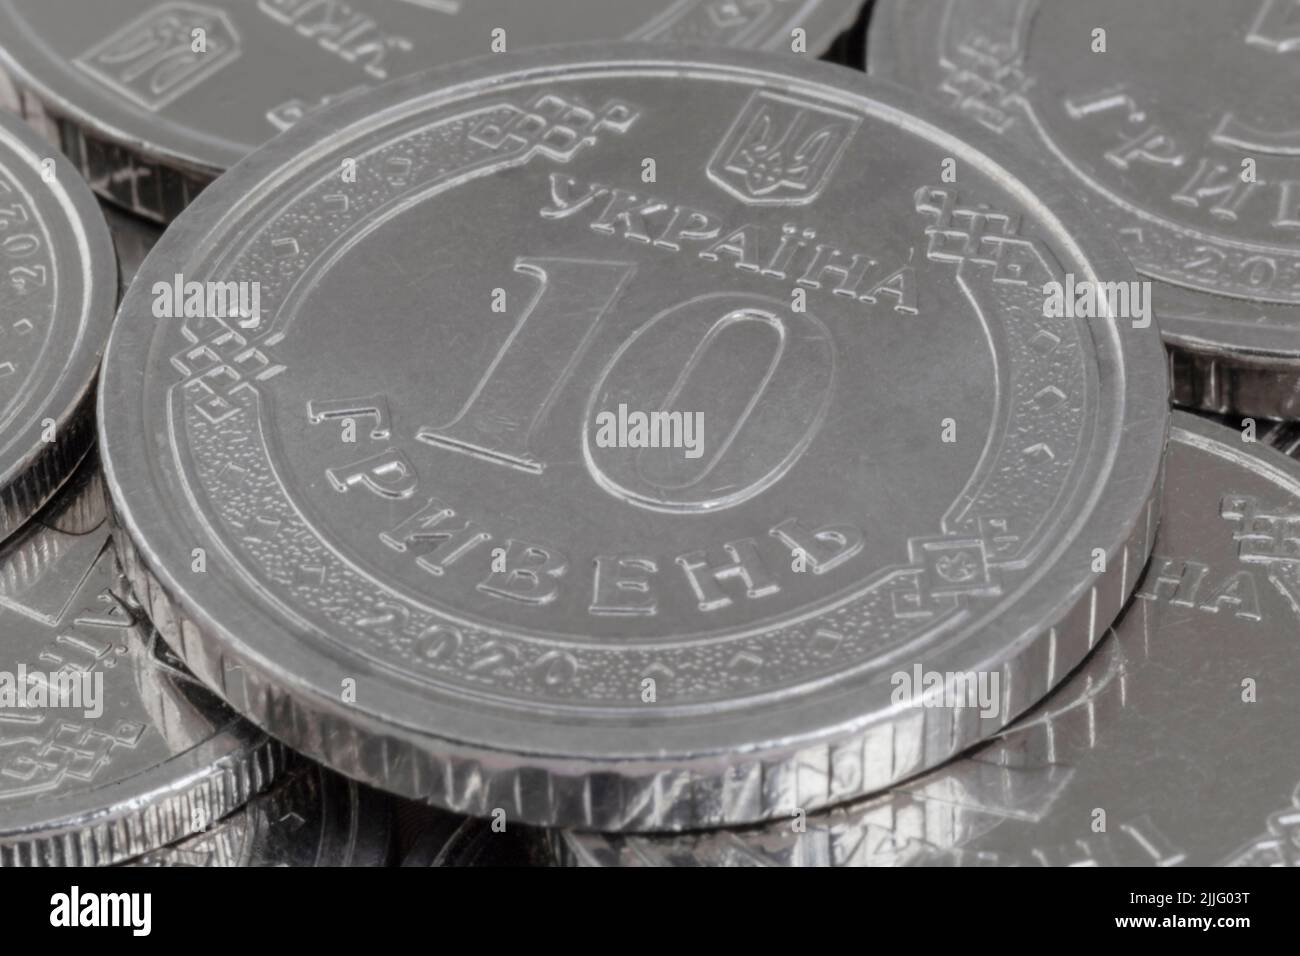 Nahaufnahme von zehn ukrainischen Hrivnya-Münzen, die auf einem Haufen Münzen liegen Stockfoto